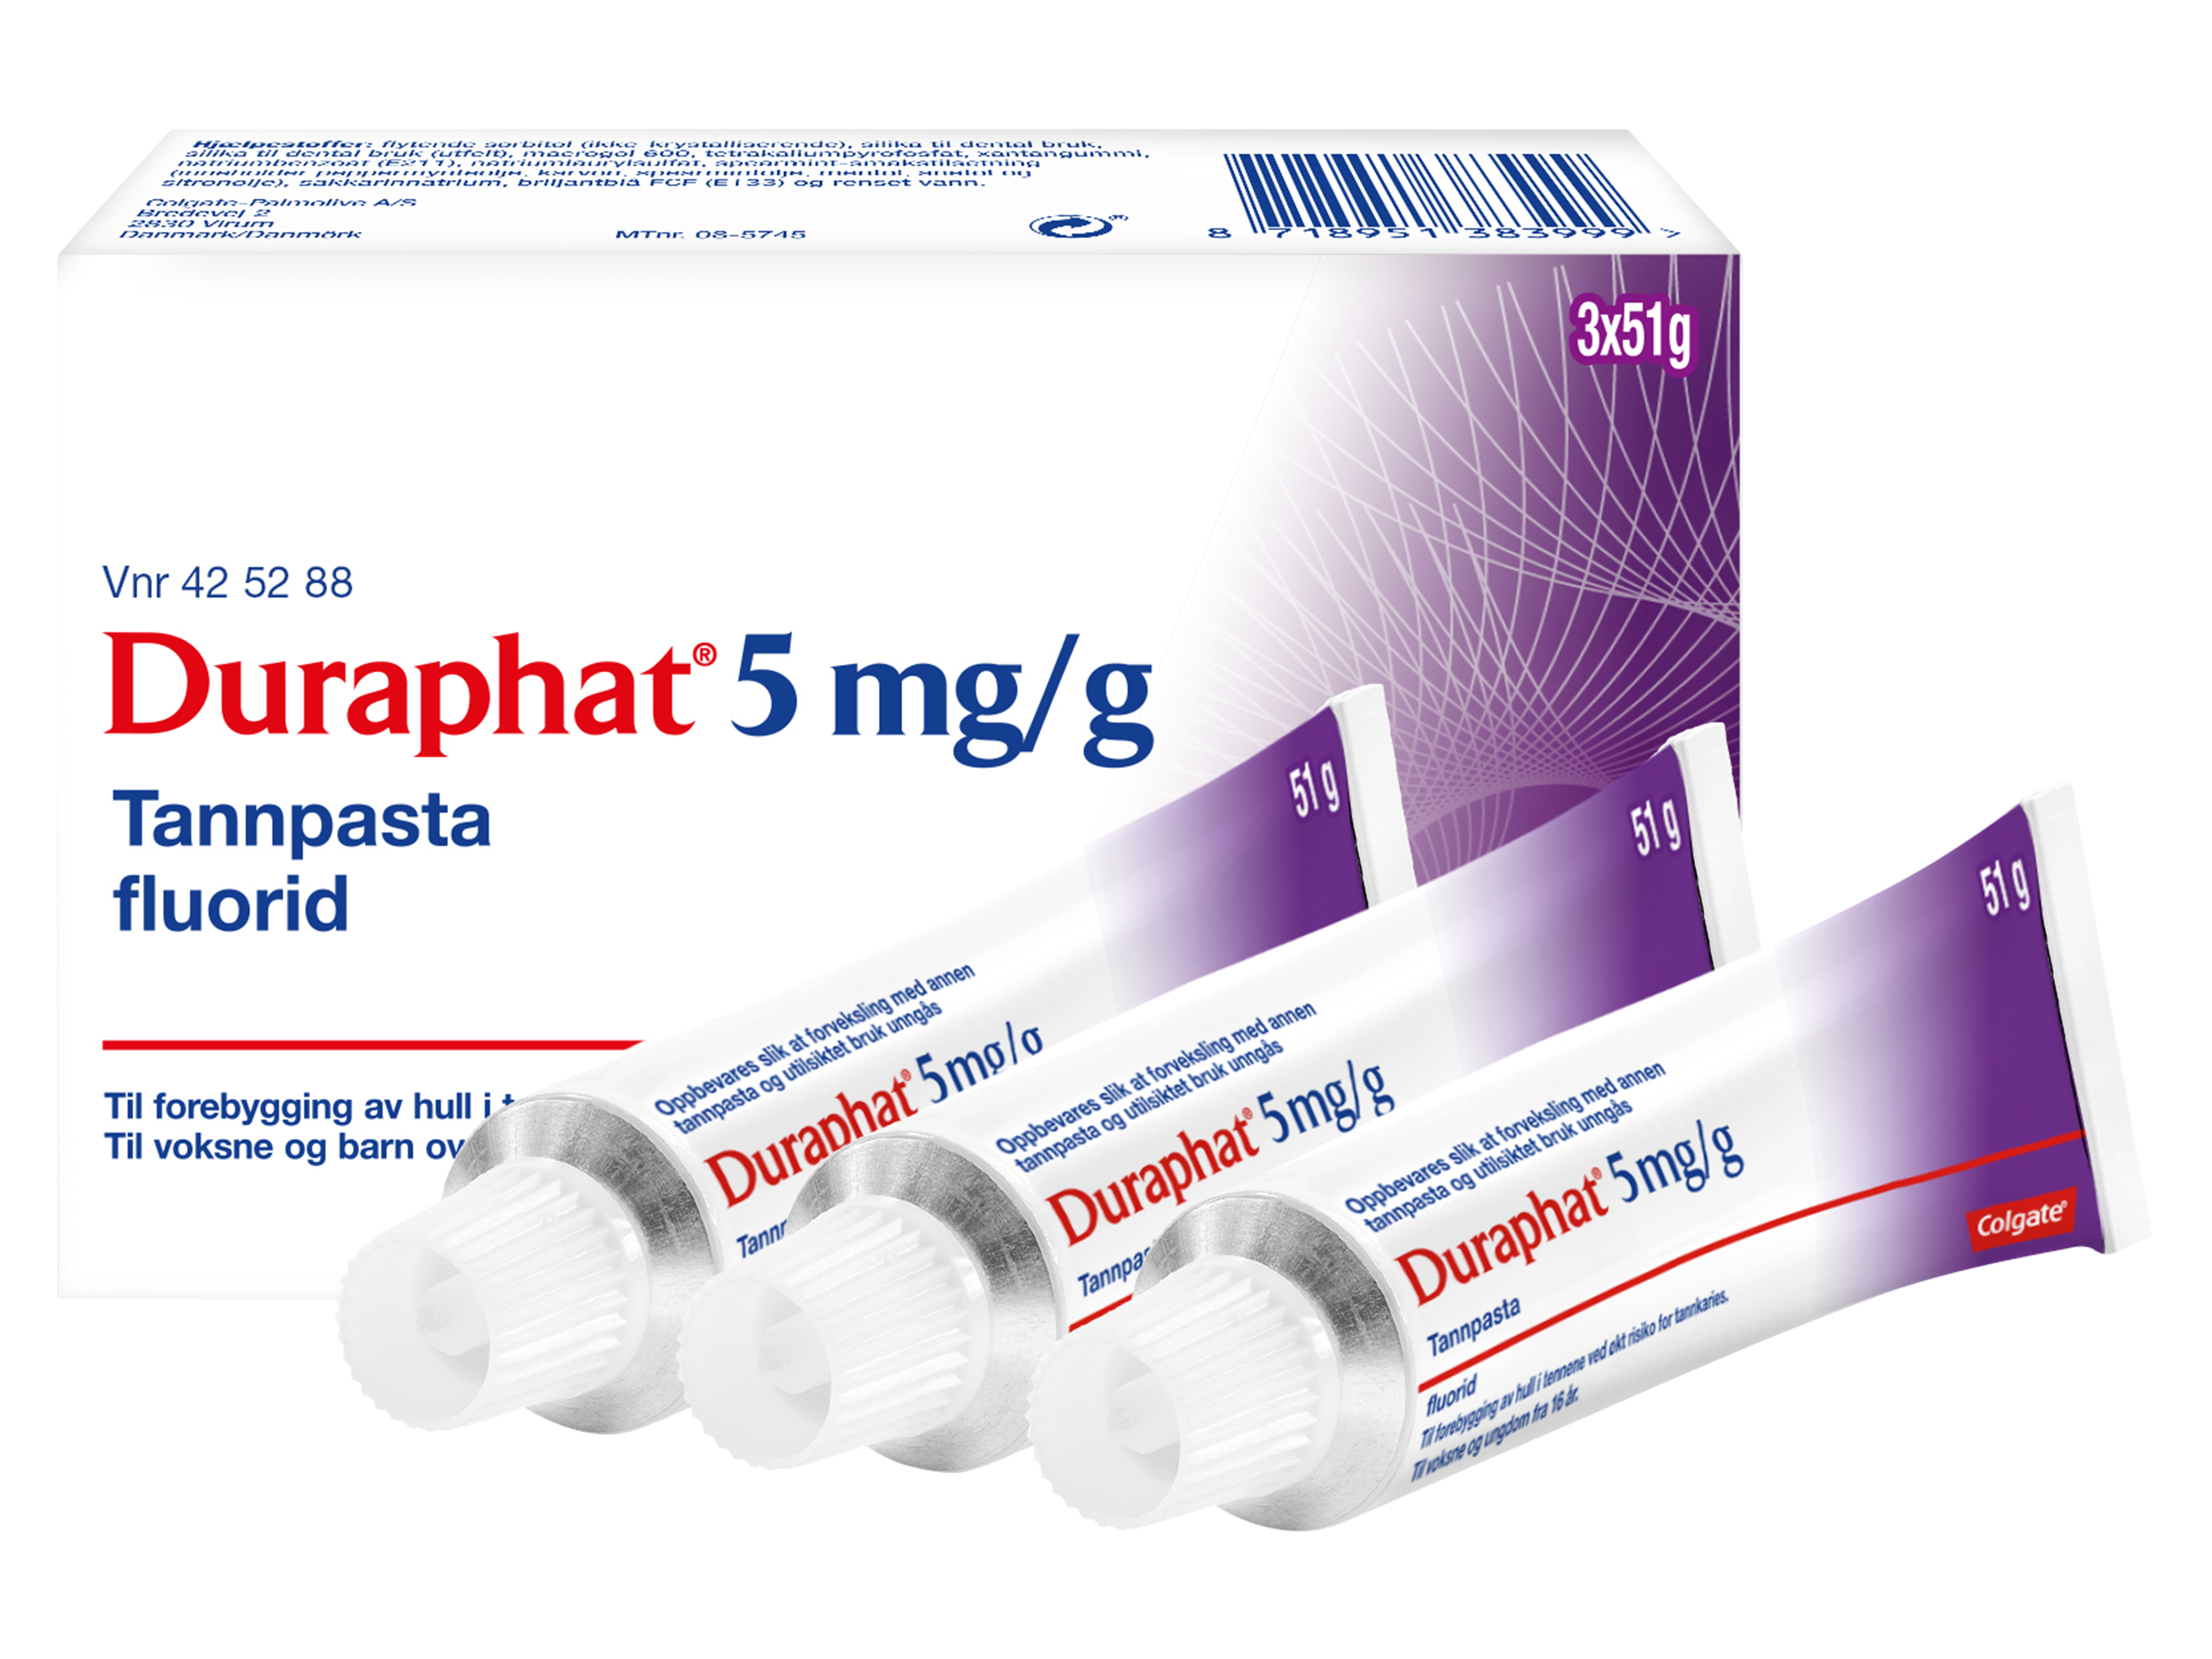 Duraphat Reseptfri fluortannpasta 5 mg/g, 3 x 51 g.